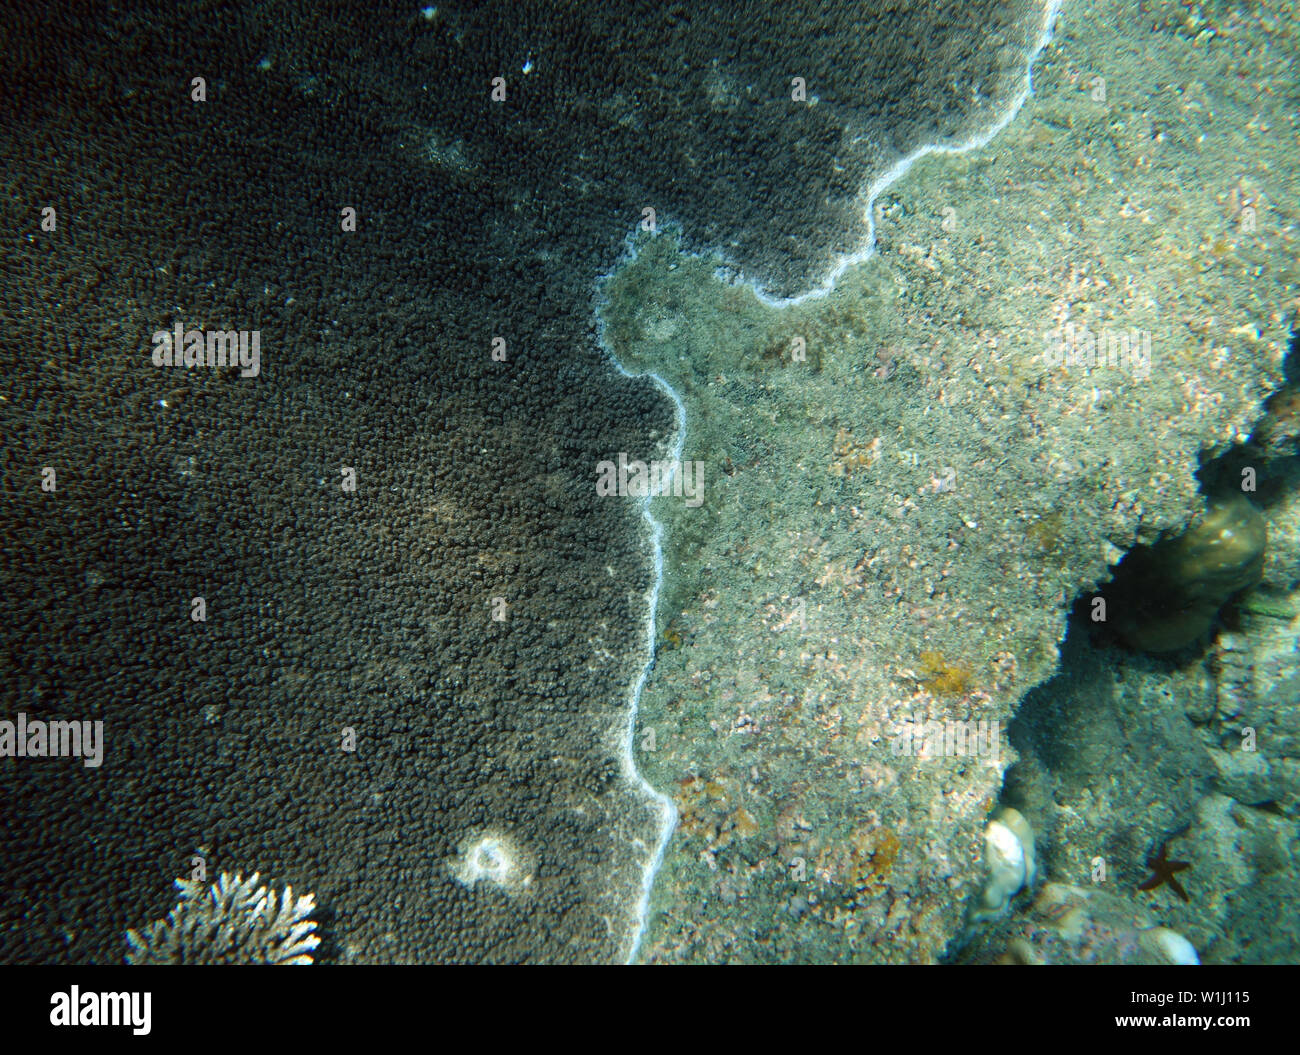 Vivir Acropora tabular tejido coralino re-creciendo sobre su propio esqueleto muerto asesinado en un blanqueamiento en 2017, las Islas Frankland, la Gran Barrera de Coral, Q Foto de stock